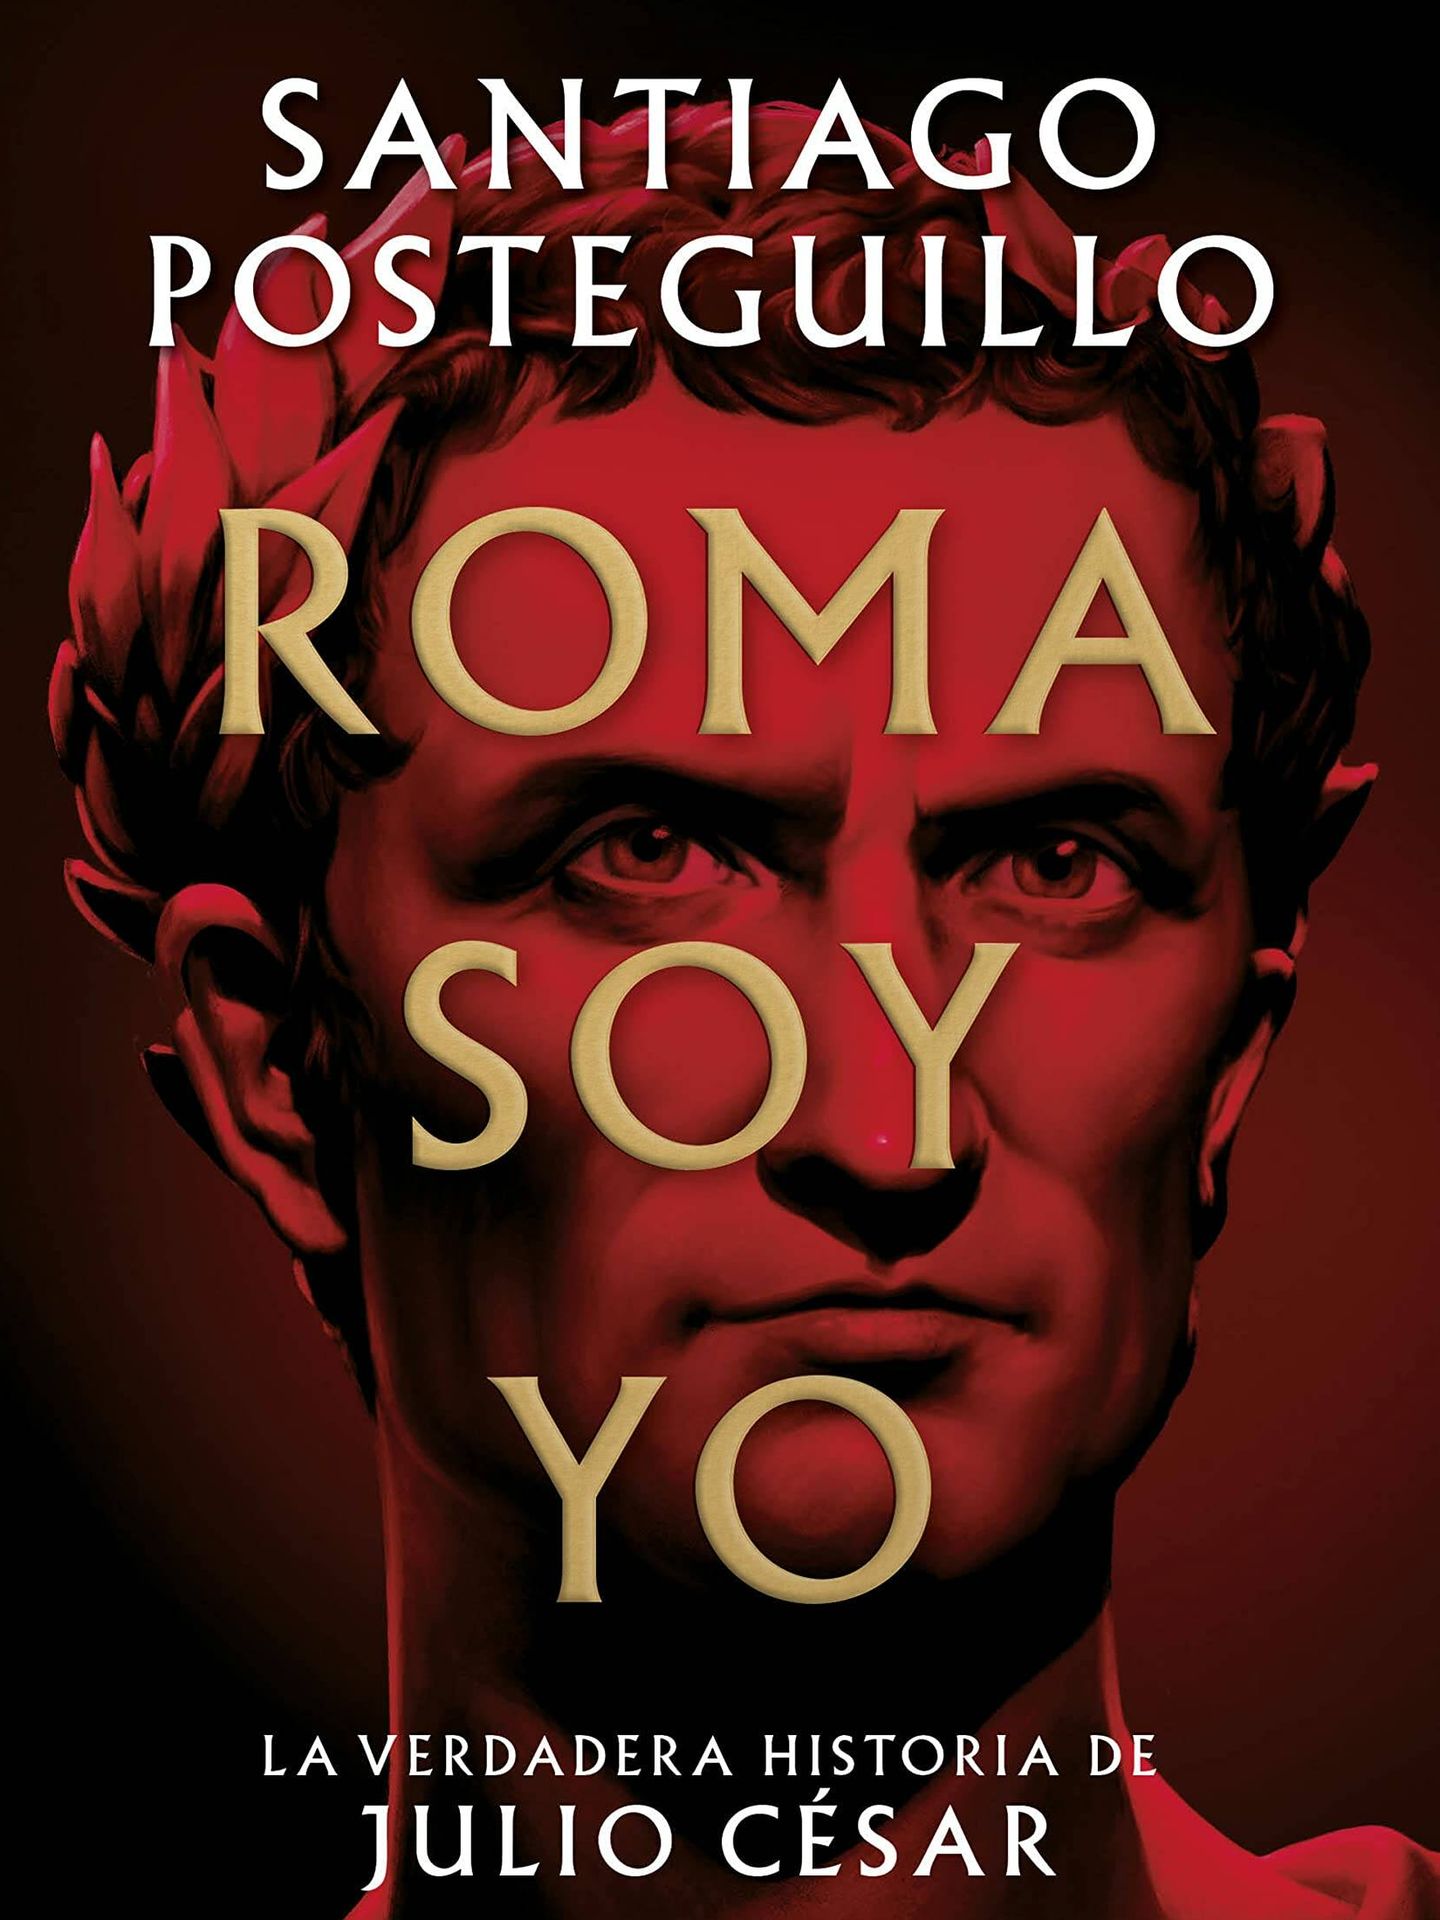 'Roma soy yo', el nuevo 'bestseller' de Santiago Posteguillo.